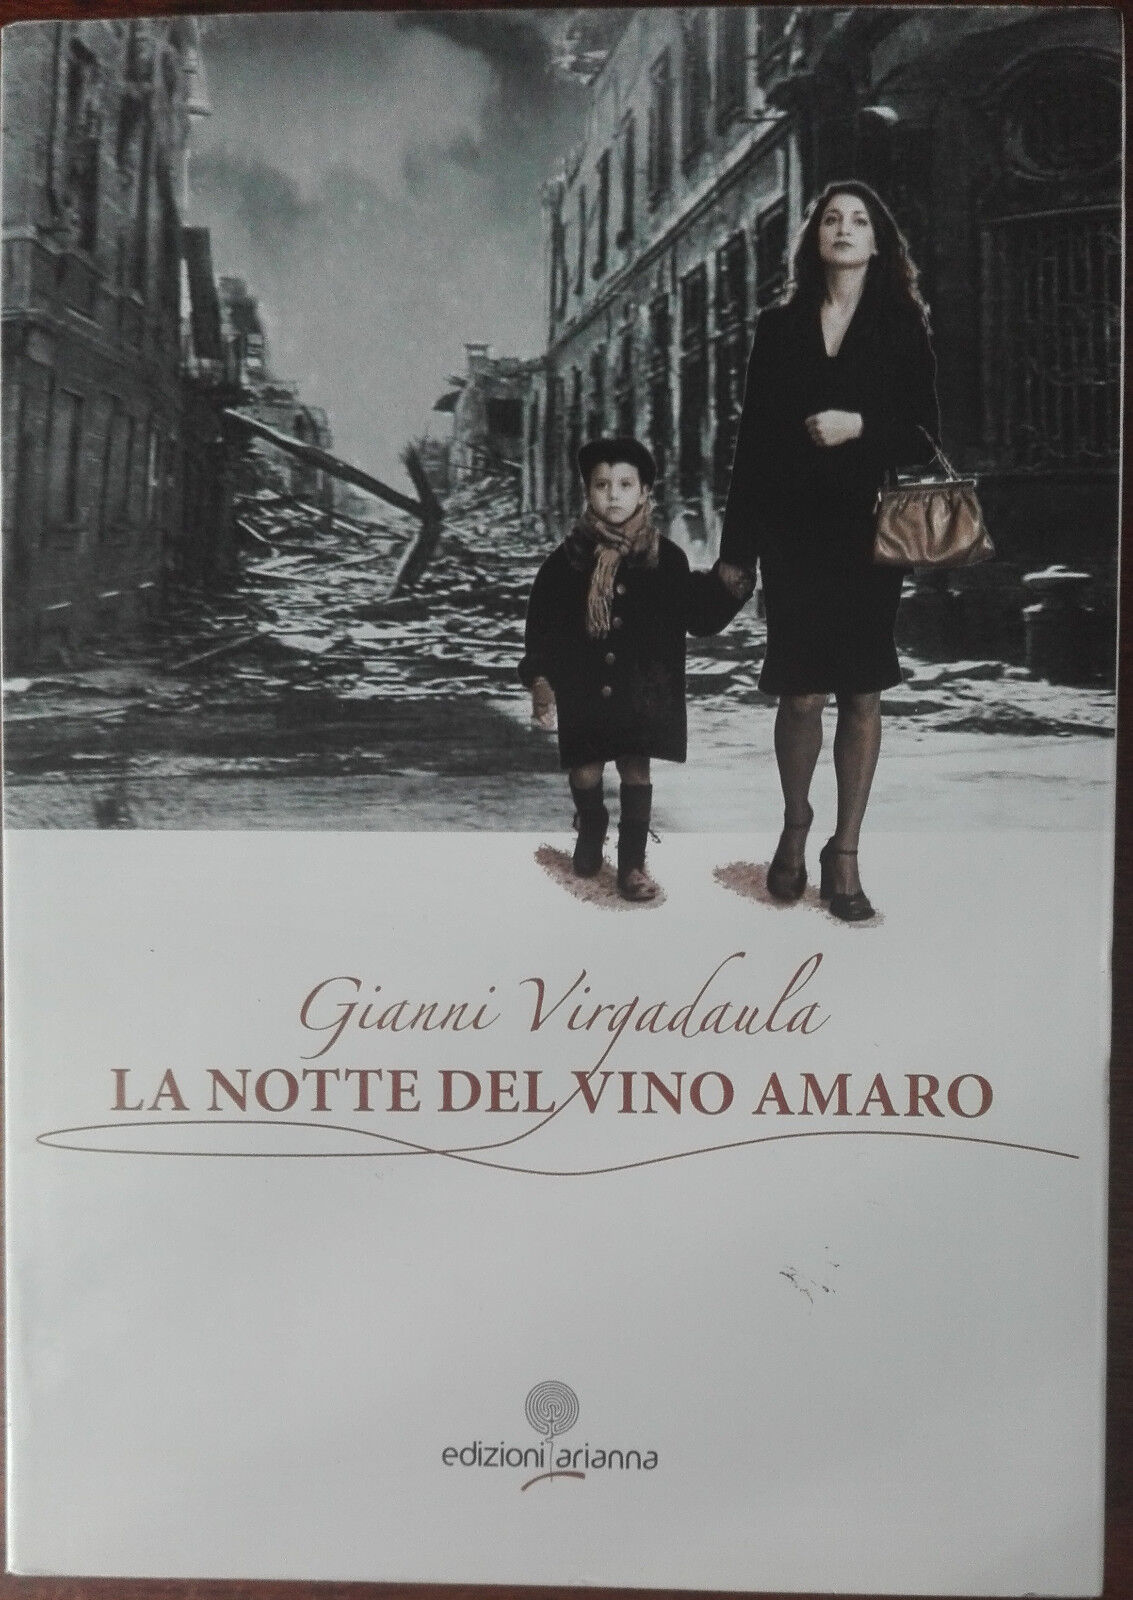 La notte del vino amaro - Giovanni Virgadaula - Edizioni Arianna,2011 - A